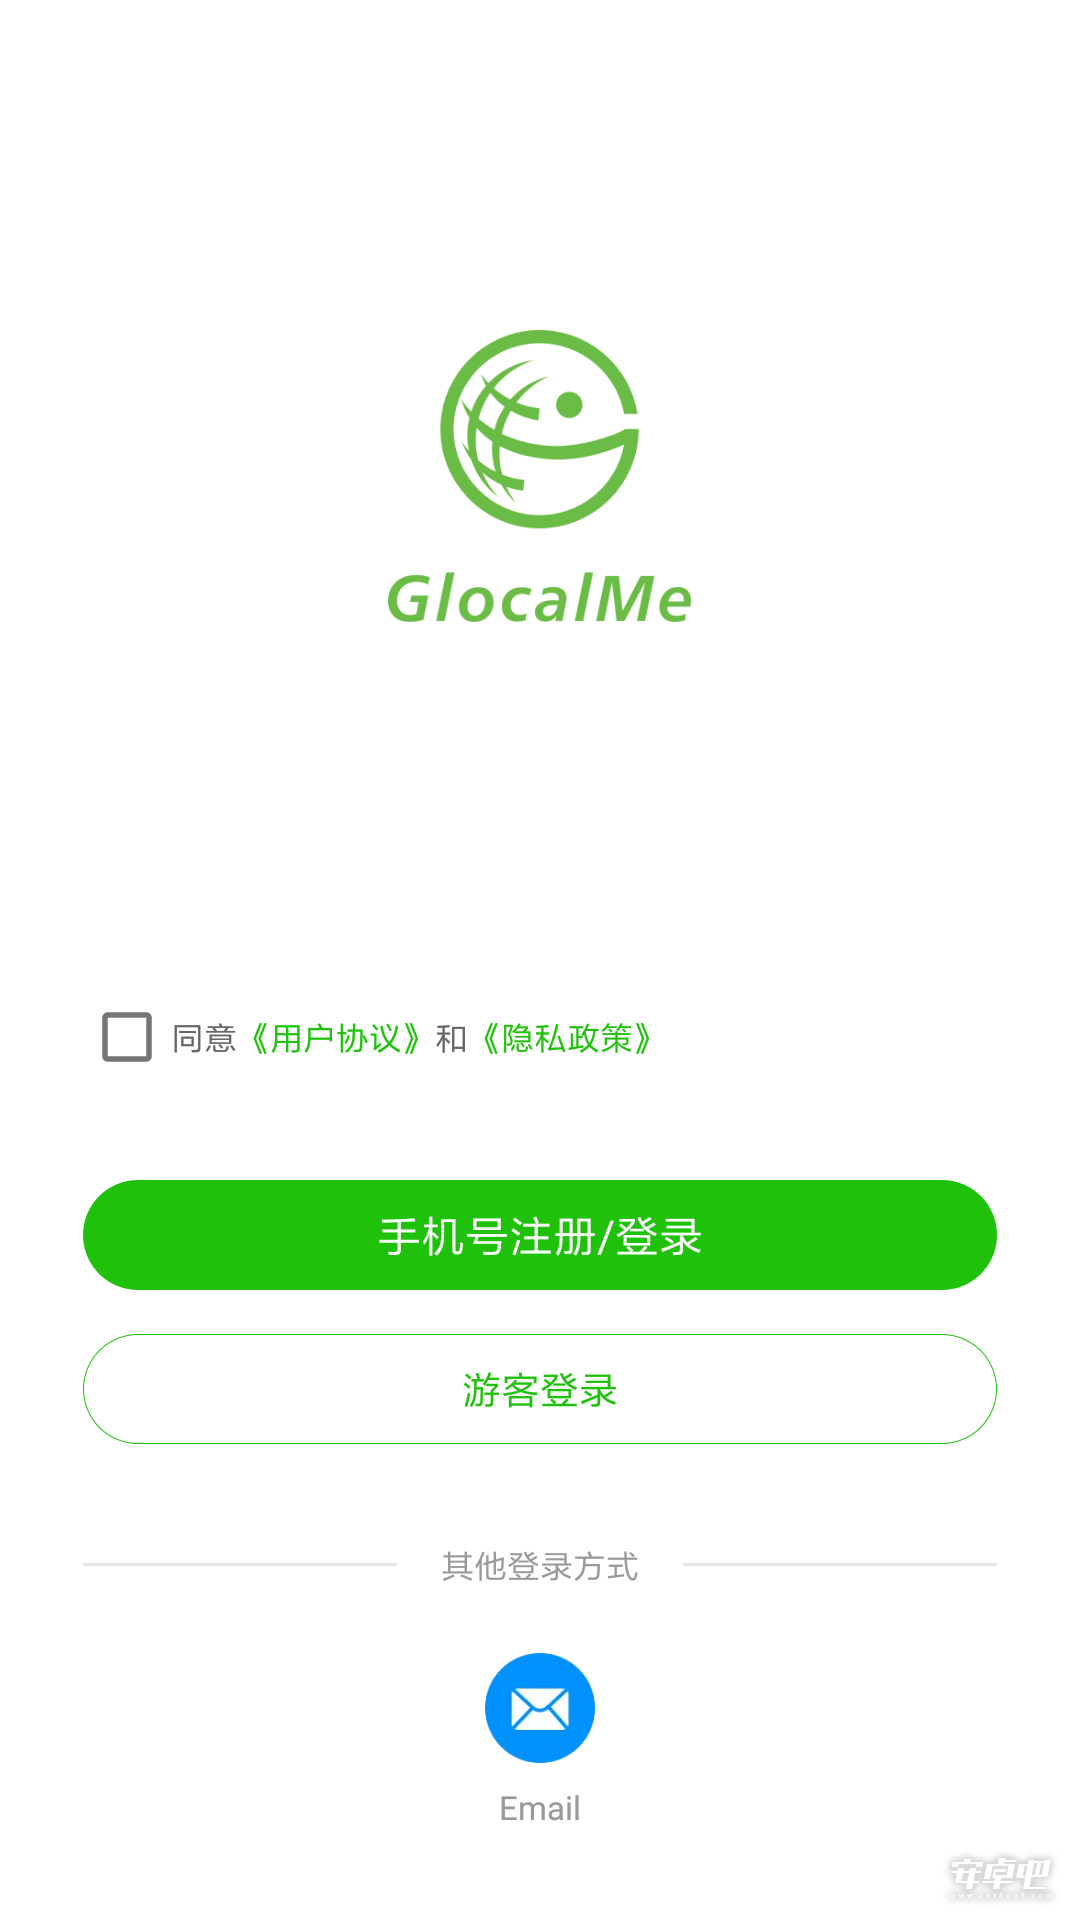 GlocalMe0